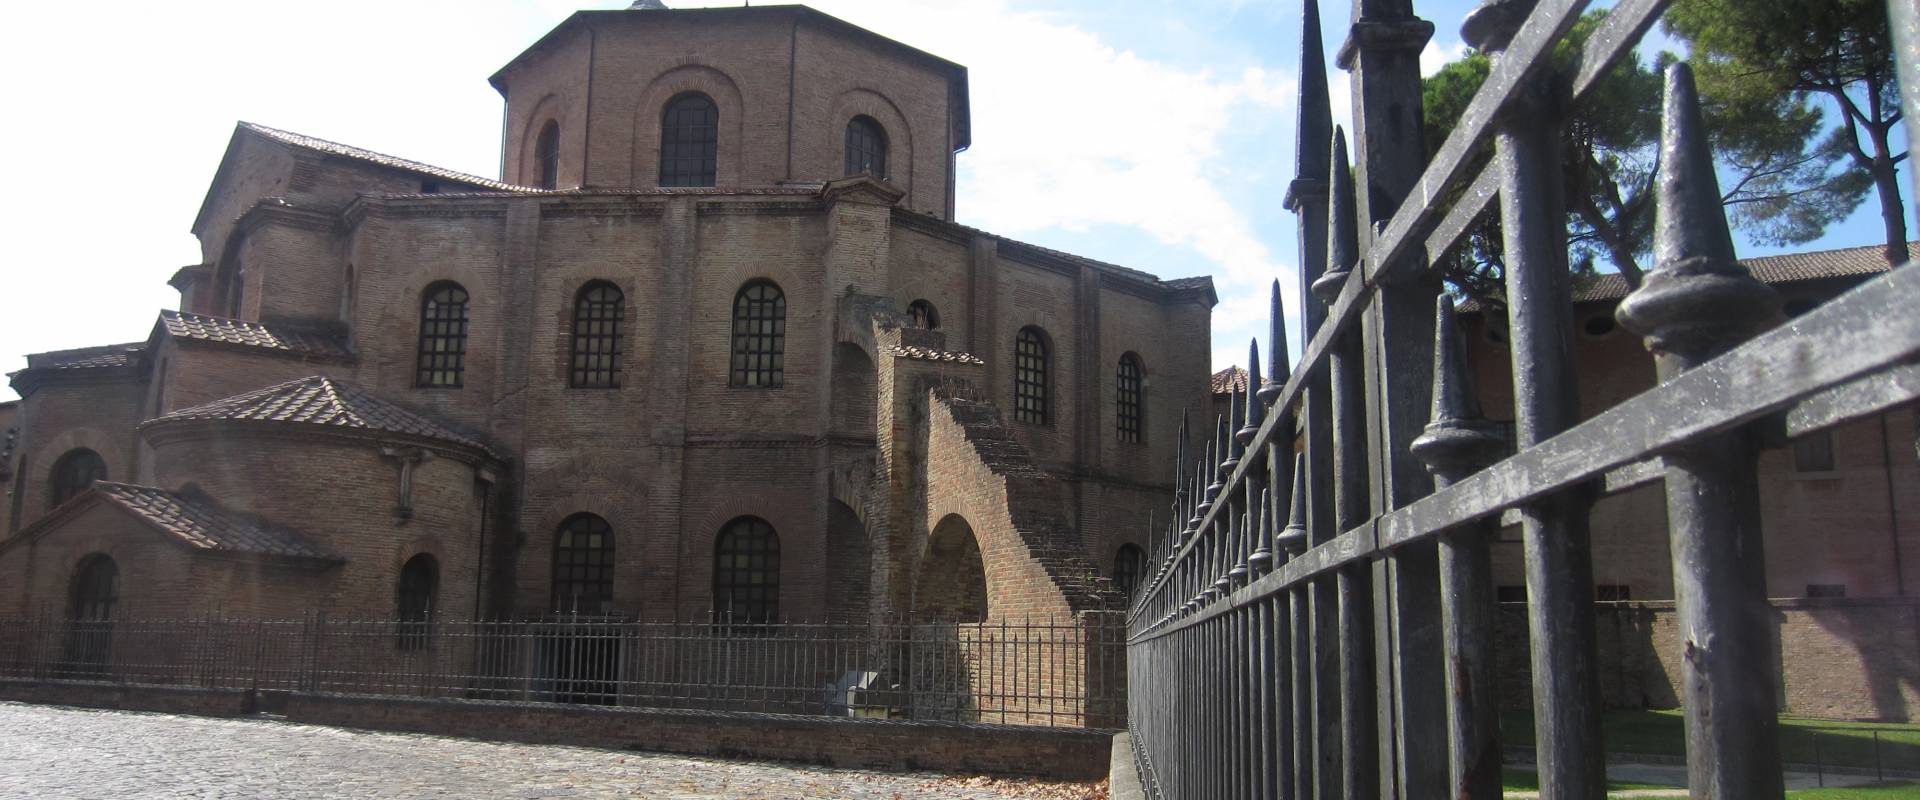 Basilica di San Vitale - esterno foto di Ebe94